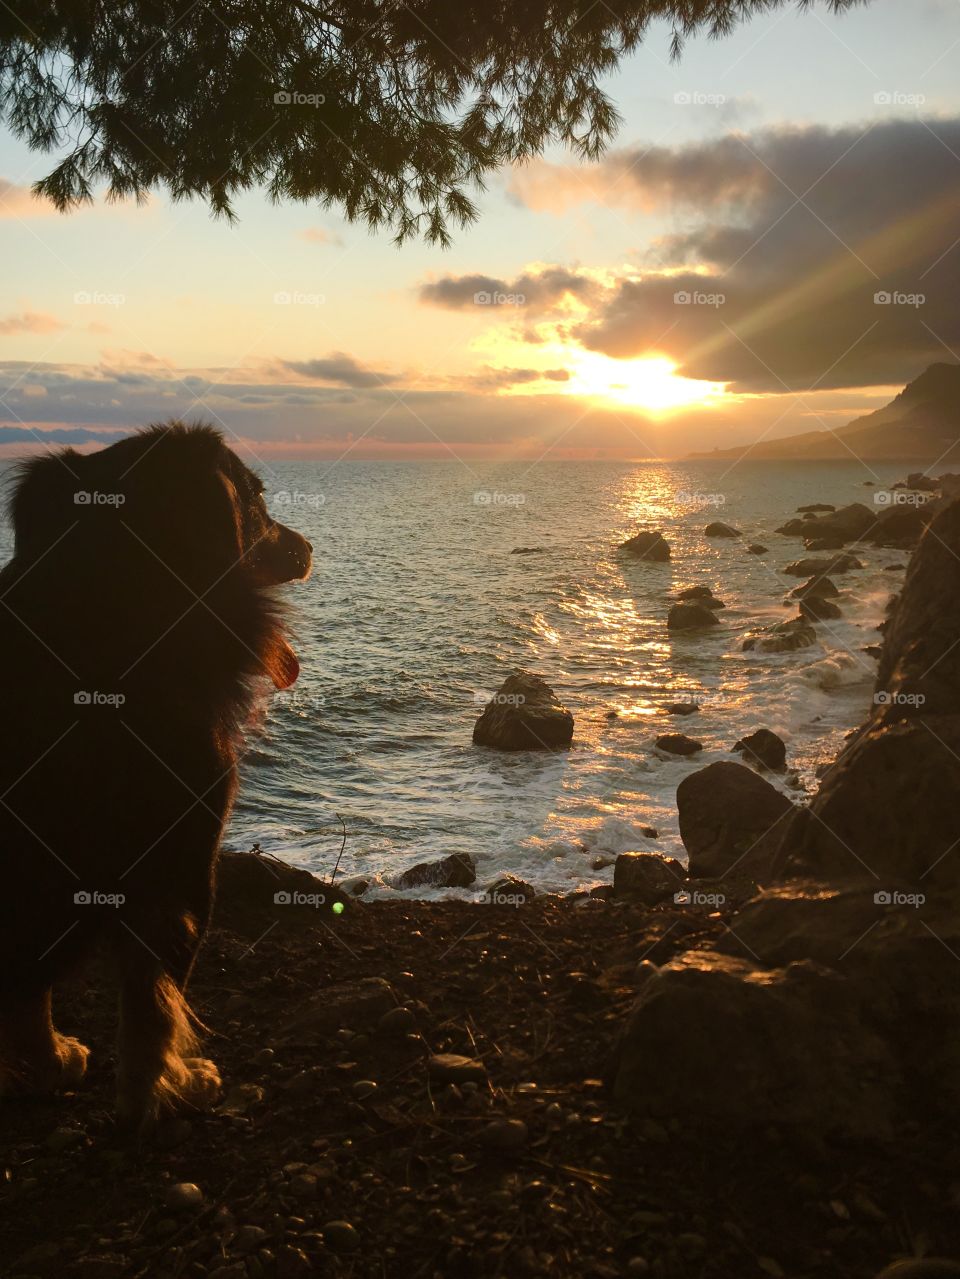 Cute doggy enjoying sunset. 